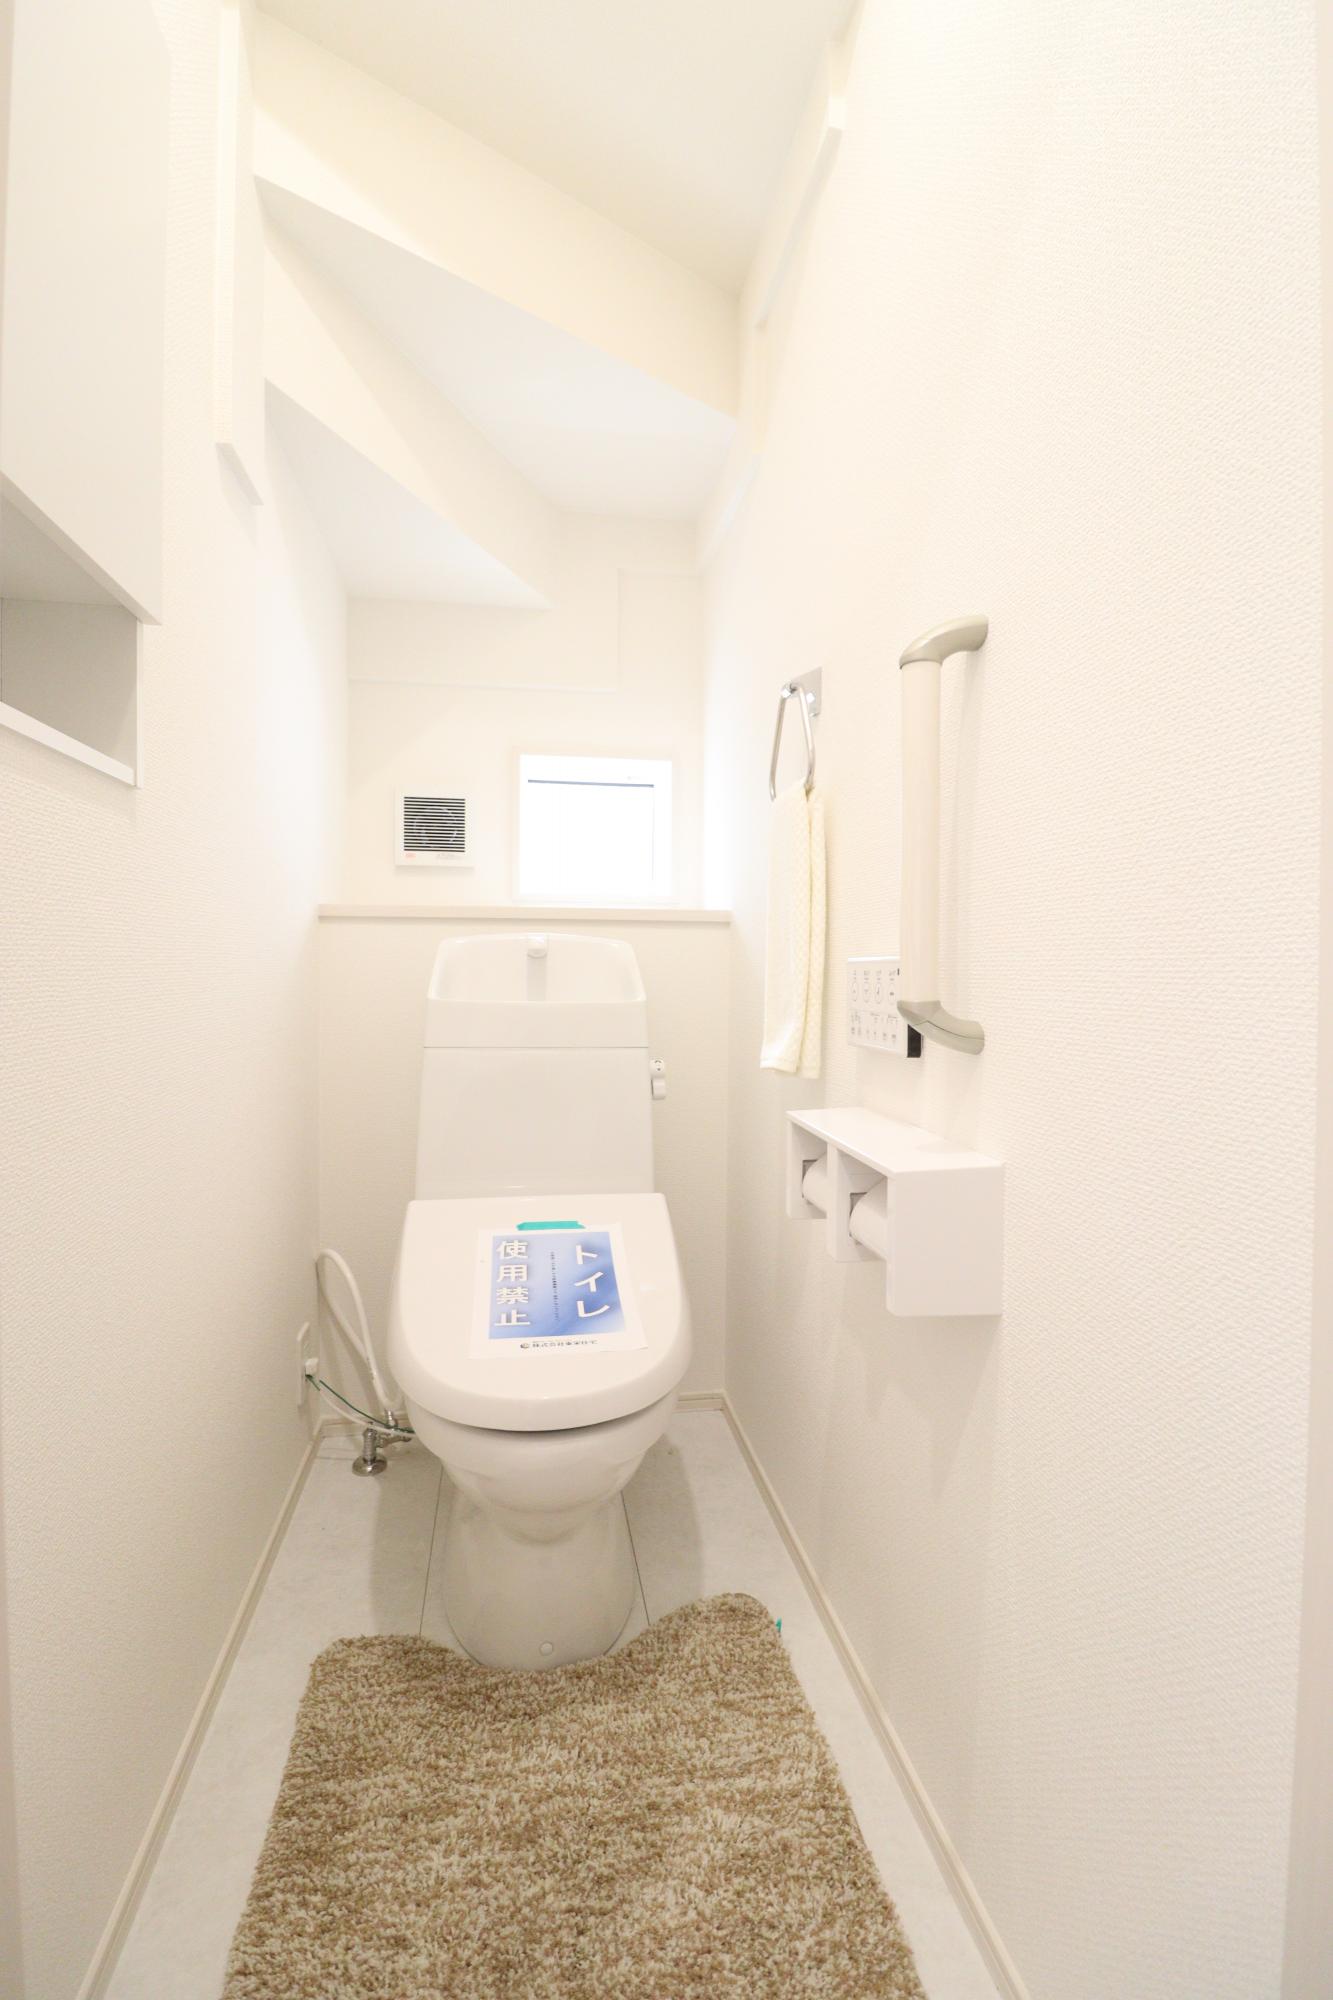 【トイレ】使い勝手に優れたワイヤレスリモコン式の温水洗浄便座!さらに収納棚も設置しているのでトイレ用品もスッキリと収納することができます♪